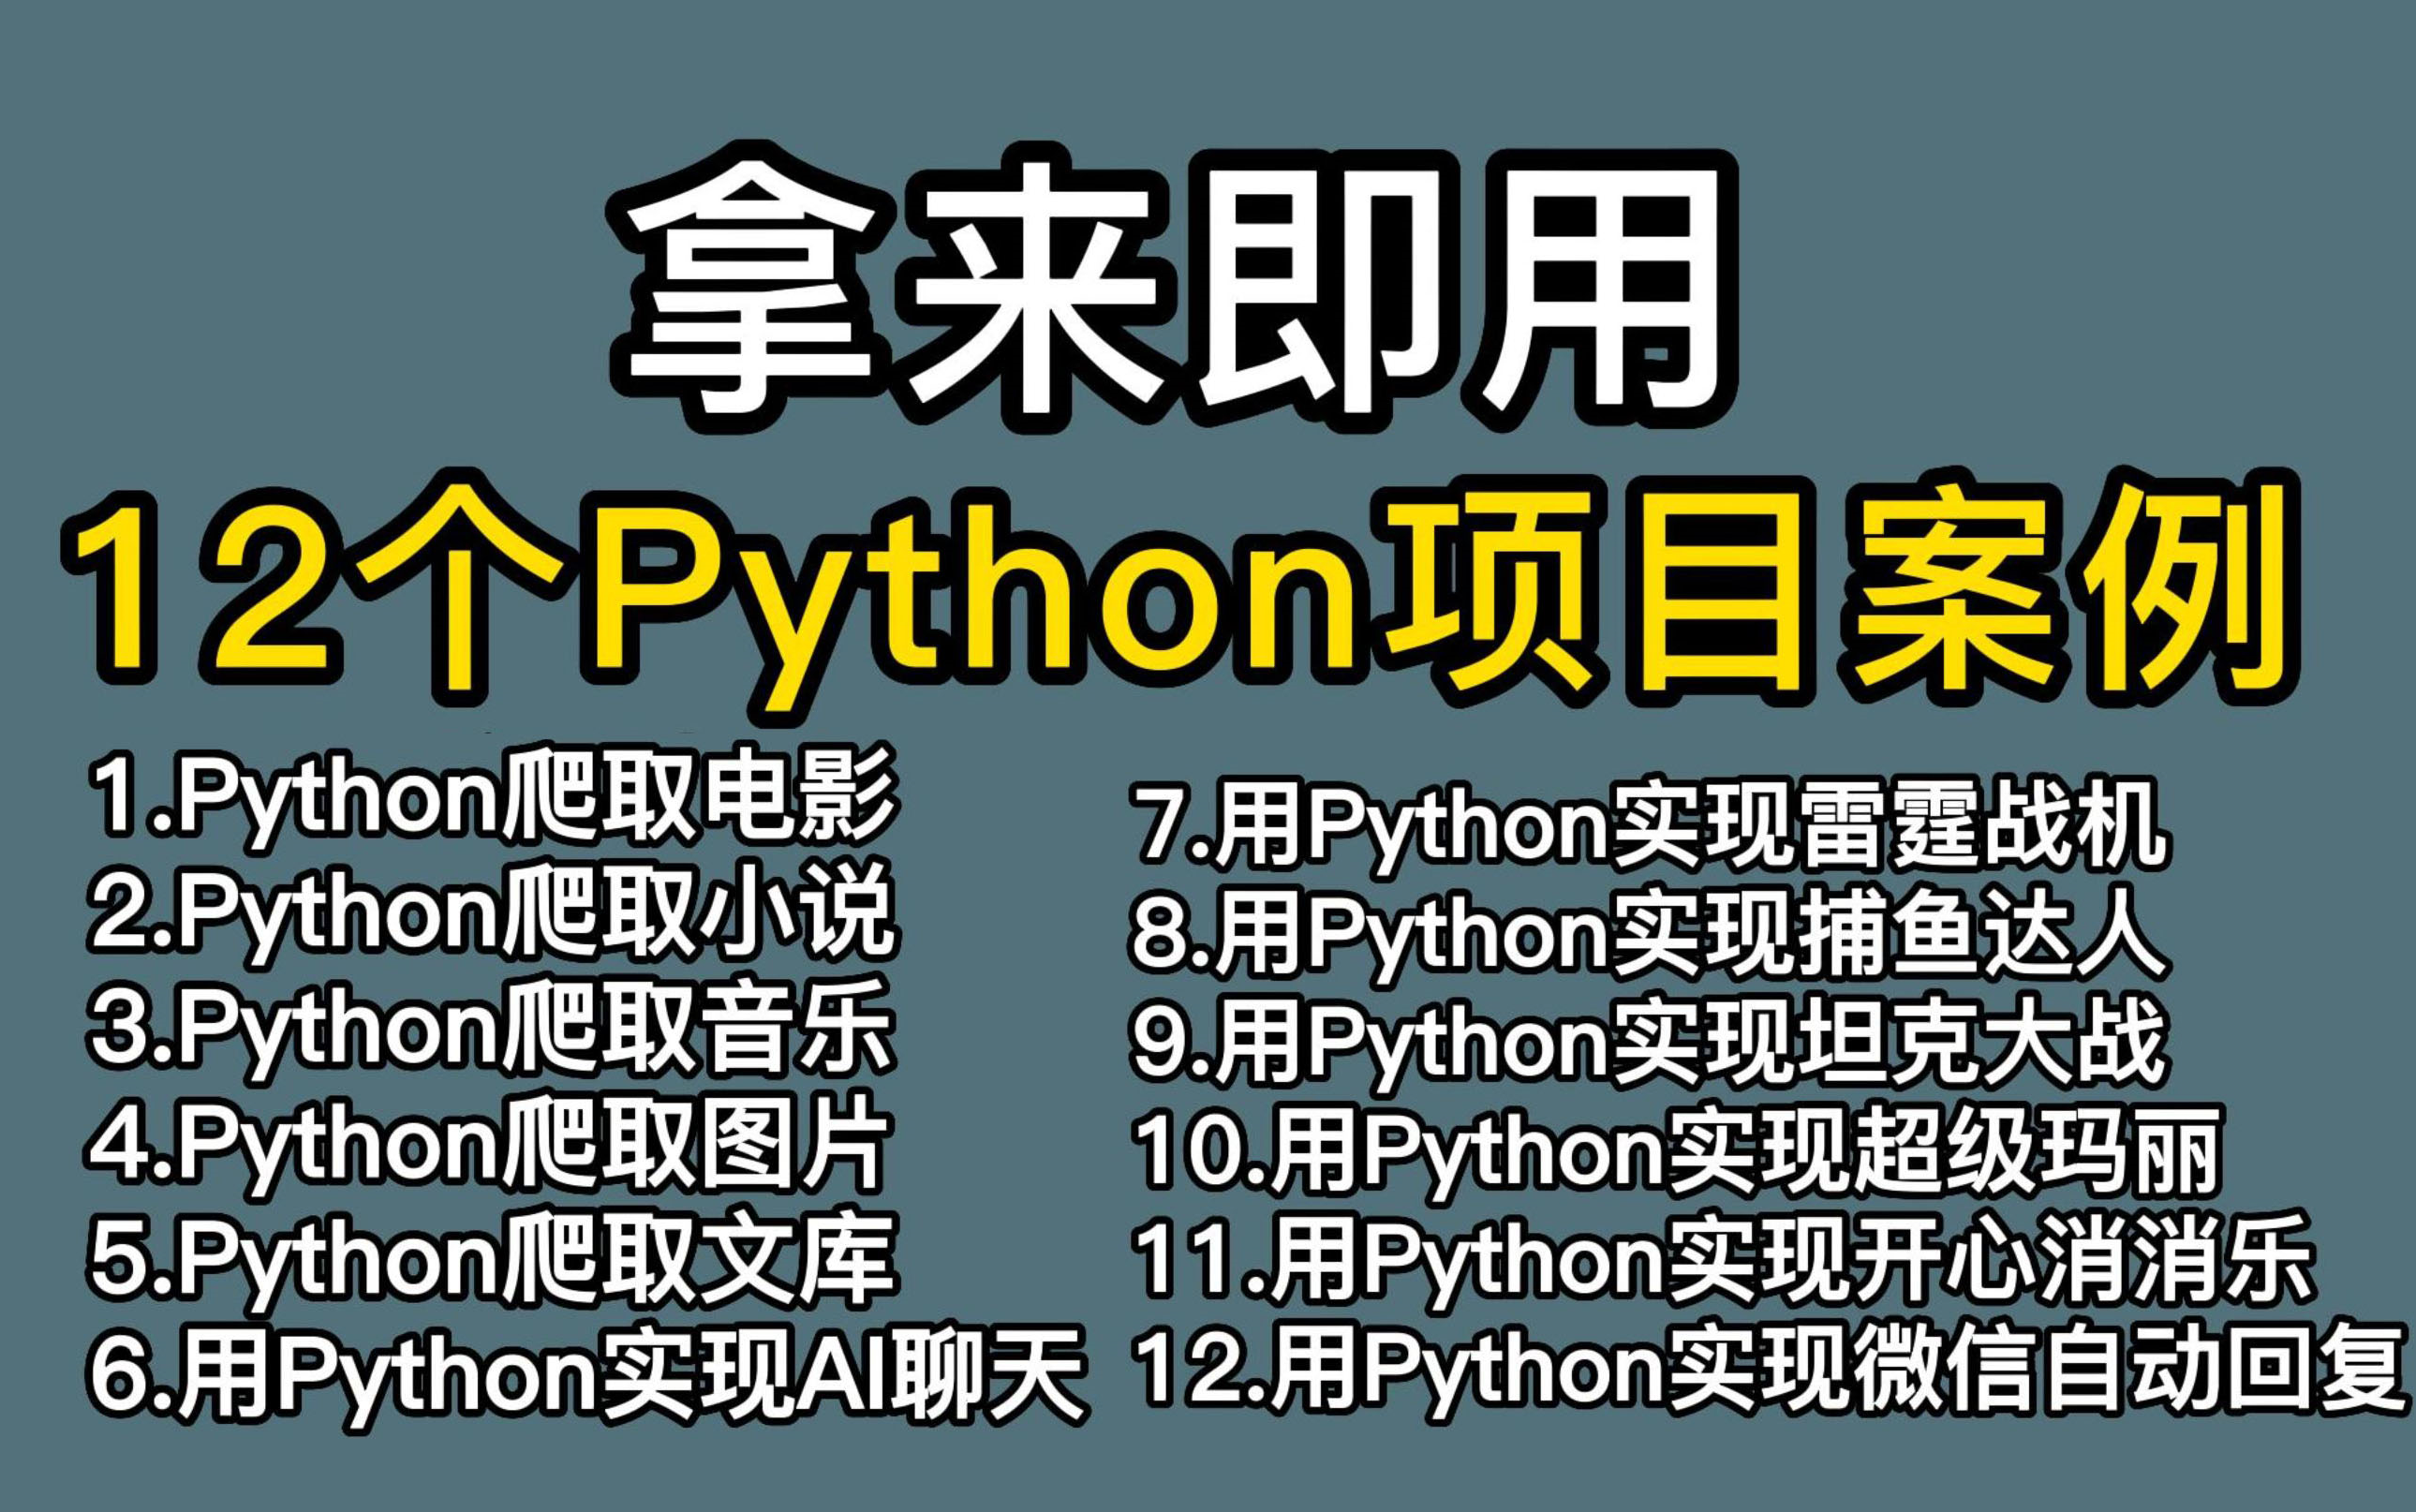 【附源码】超实用的12个Python爬虫实战案例，学完可自己爬取，超级适合小白入门学习